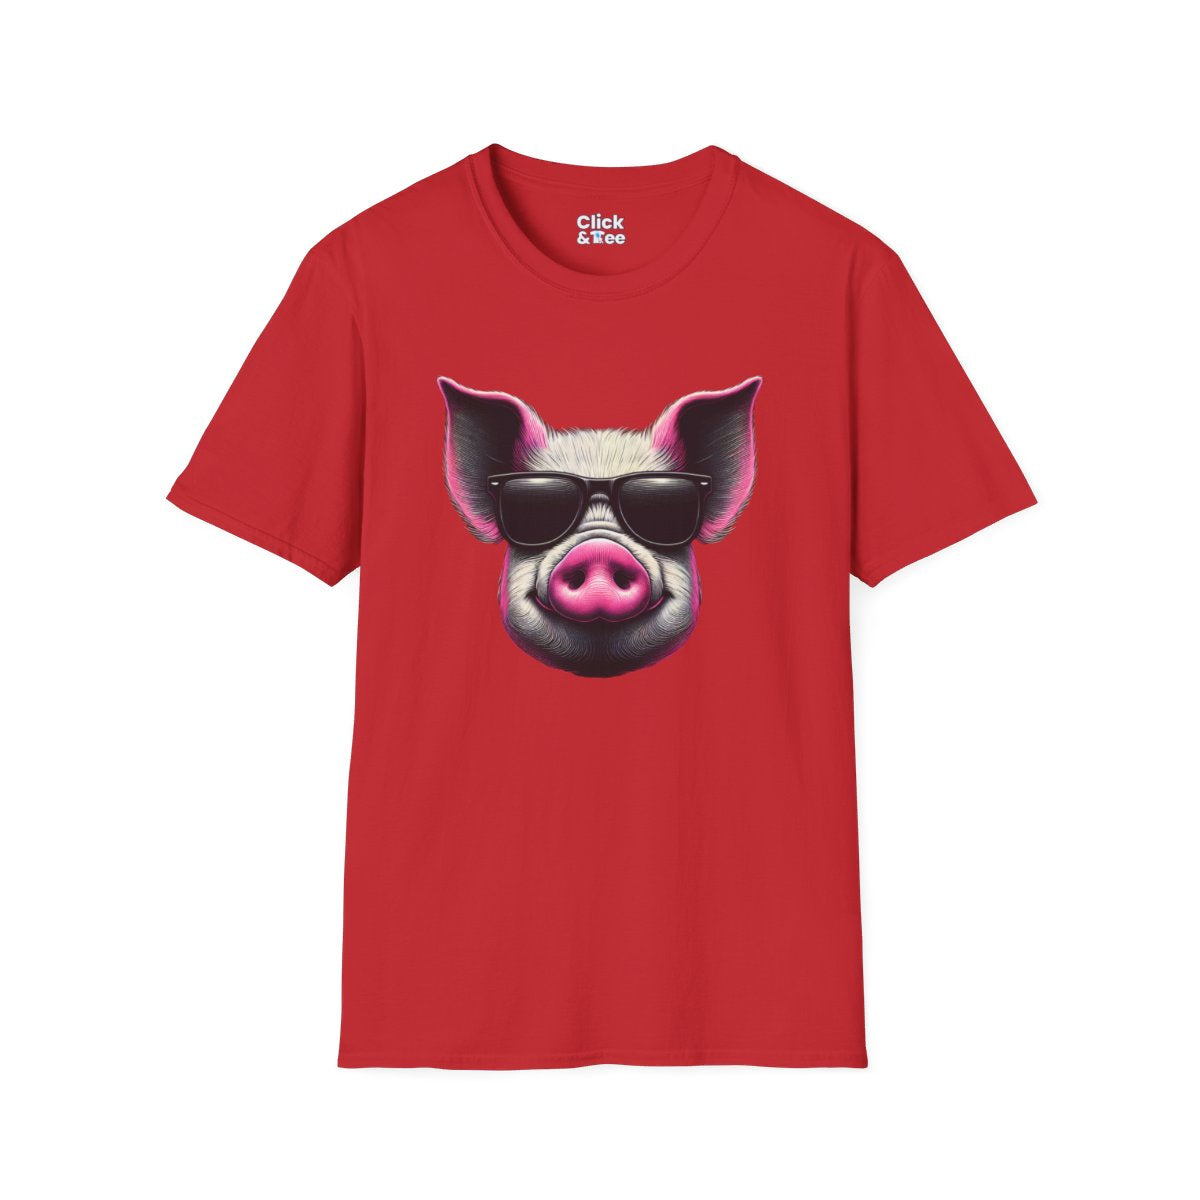 Graphic ArtPink Pig Face Unique T-Shirt Image 20